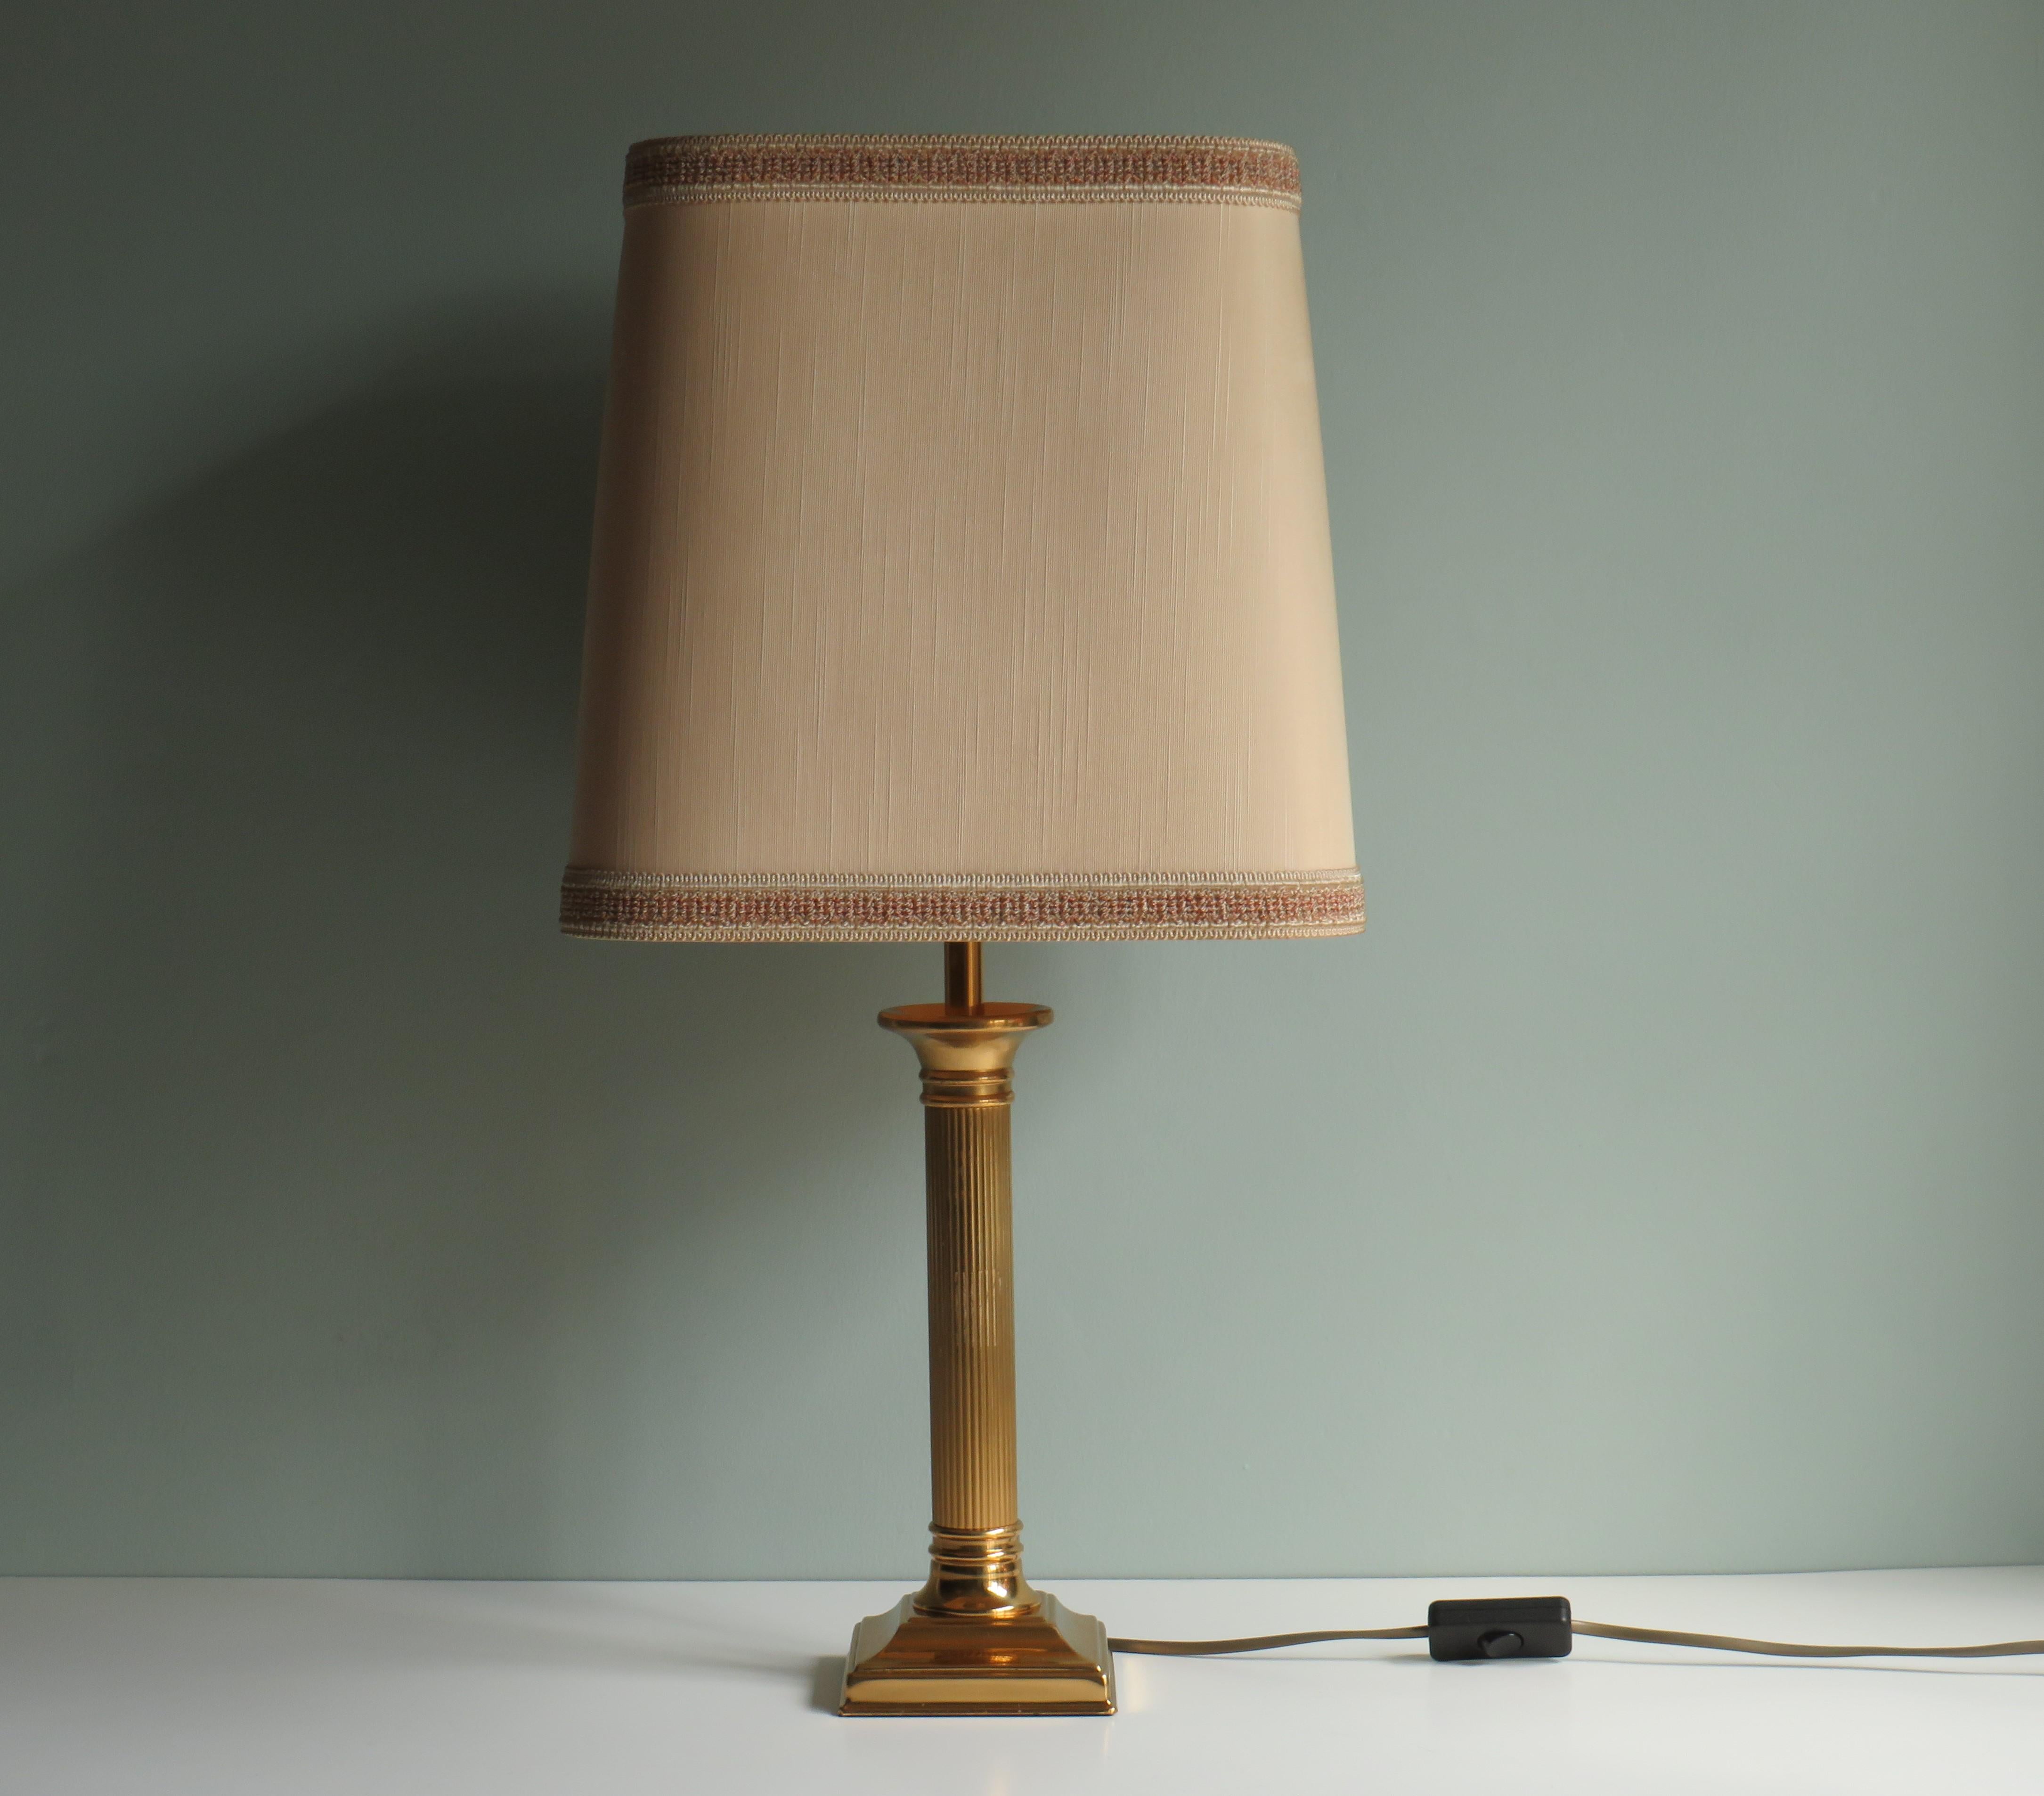 Stilvolle Tischleuchte von Deknudt, Belgien 1970er Jahre.
Die Lampe hat einen schönen quadratischen Original-Lampenschirm und einen Messingsockel mit einer E 27 Fassung.
Das 1956 gegründete Unternehmen Deknudt ist immer noch aktiv und stellt nach